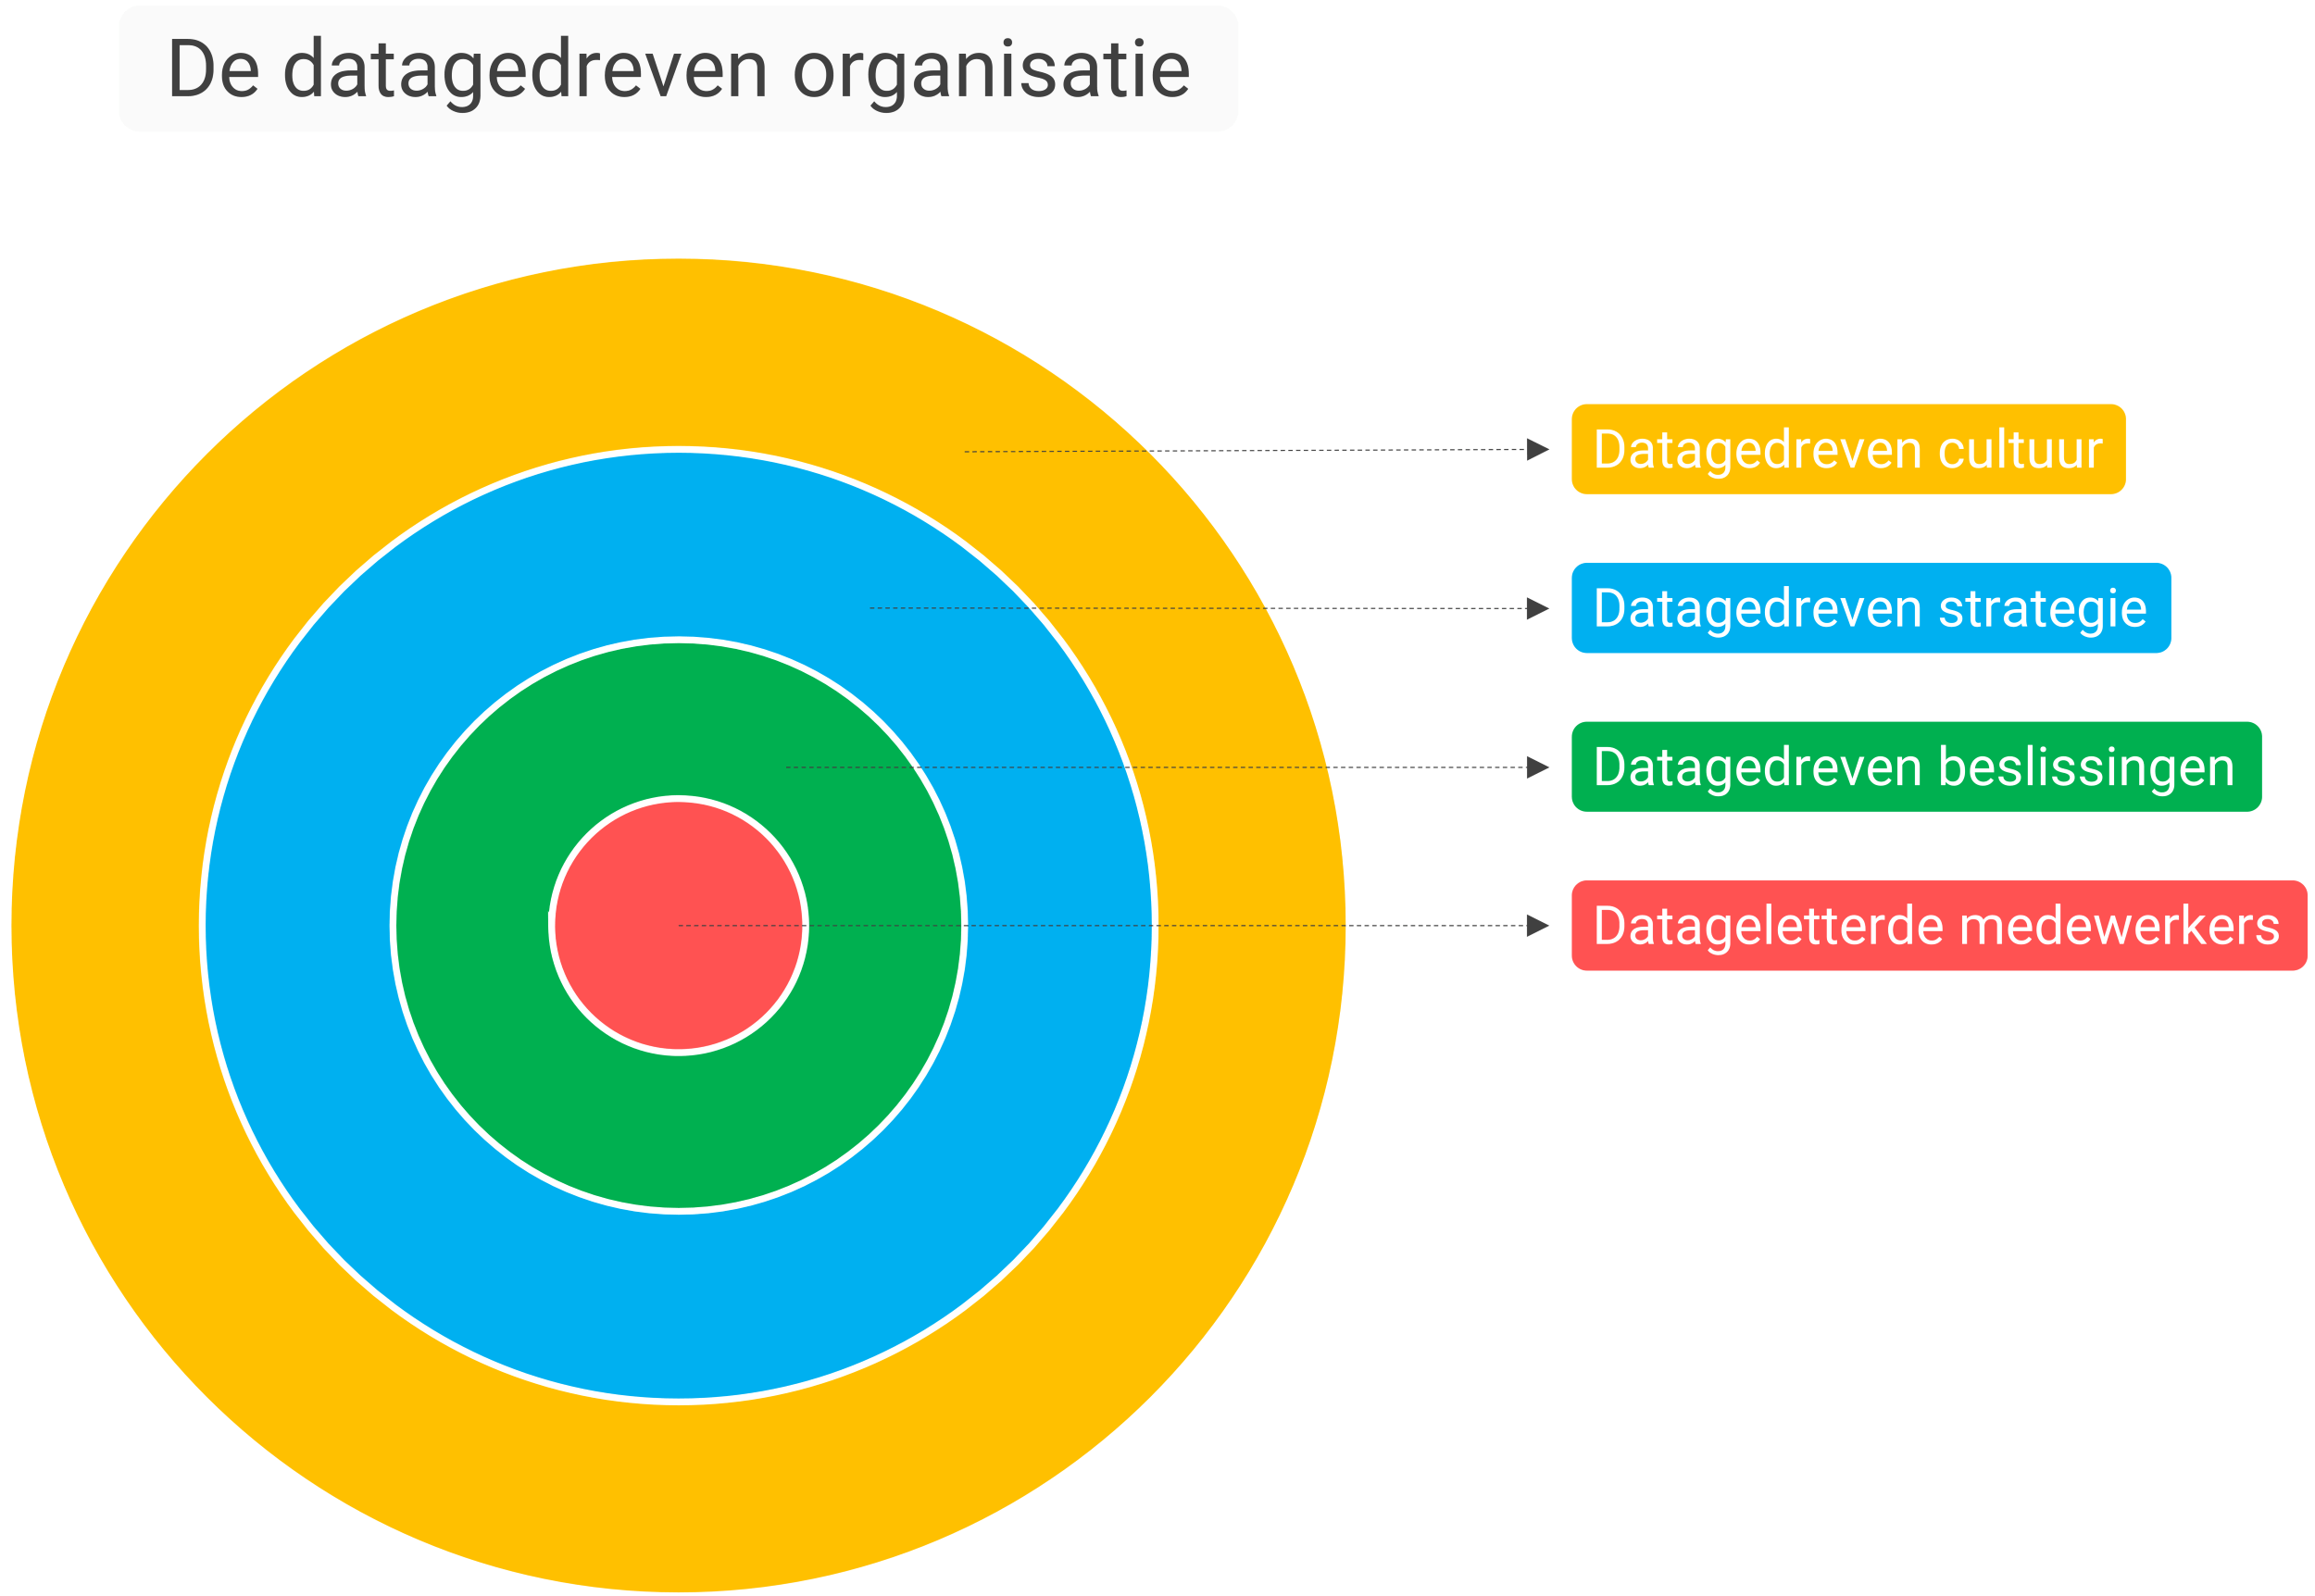 De datagedreven organisatie - 4 lagen